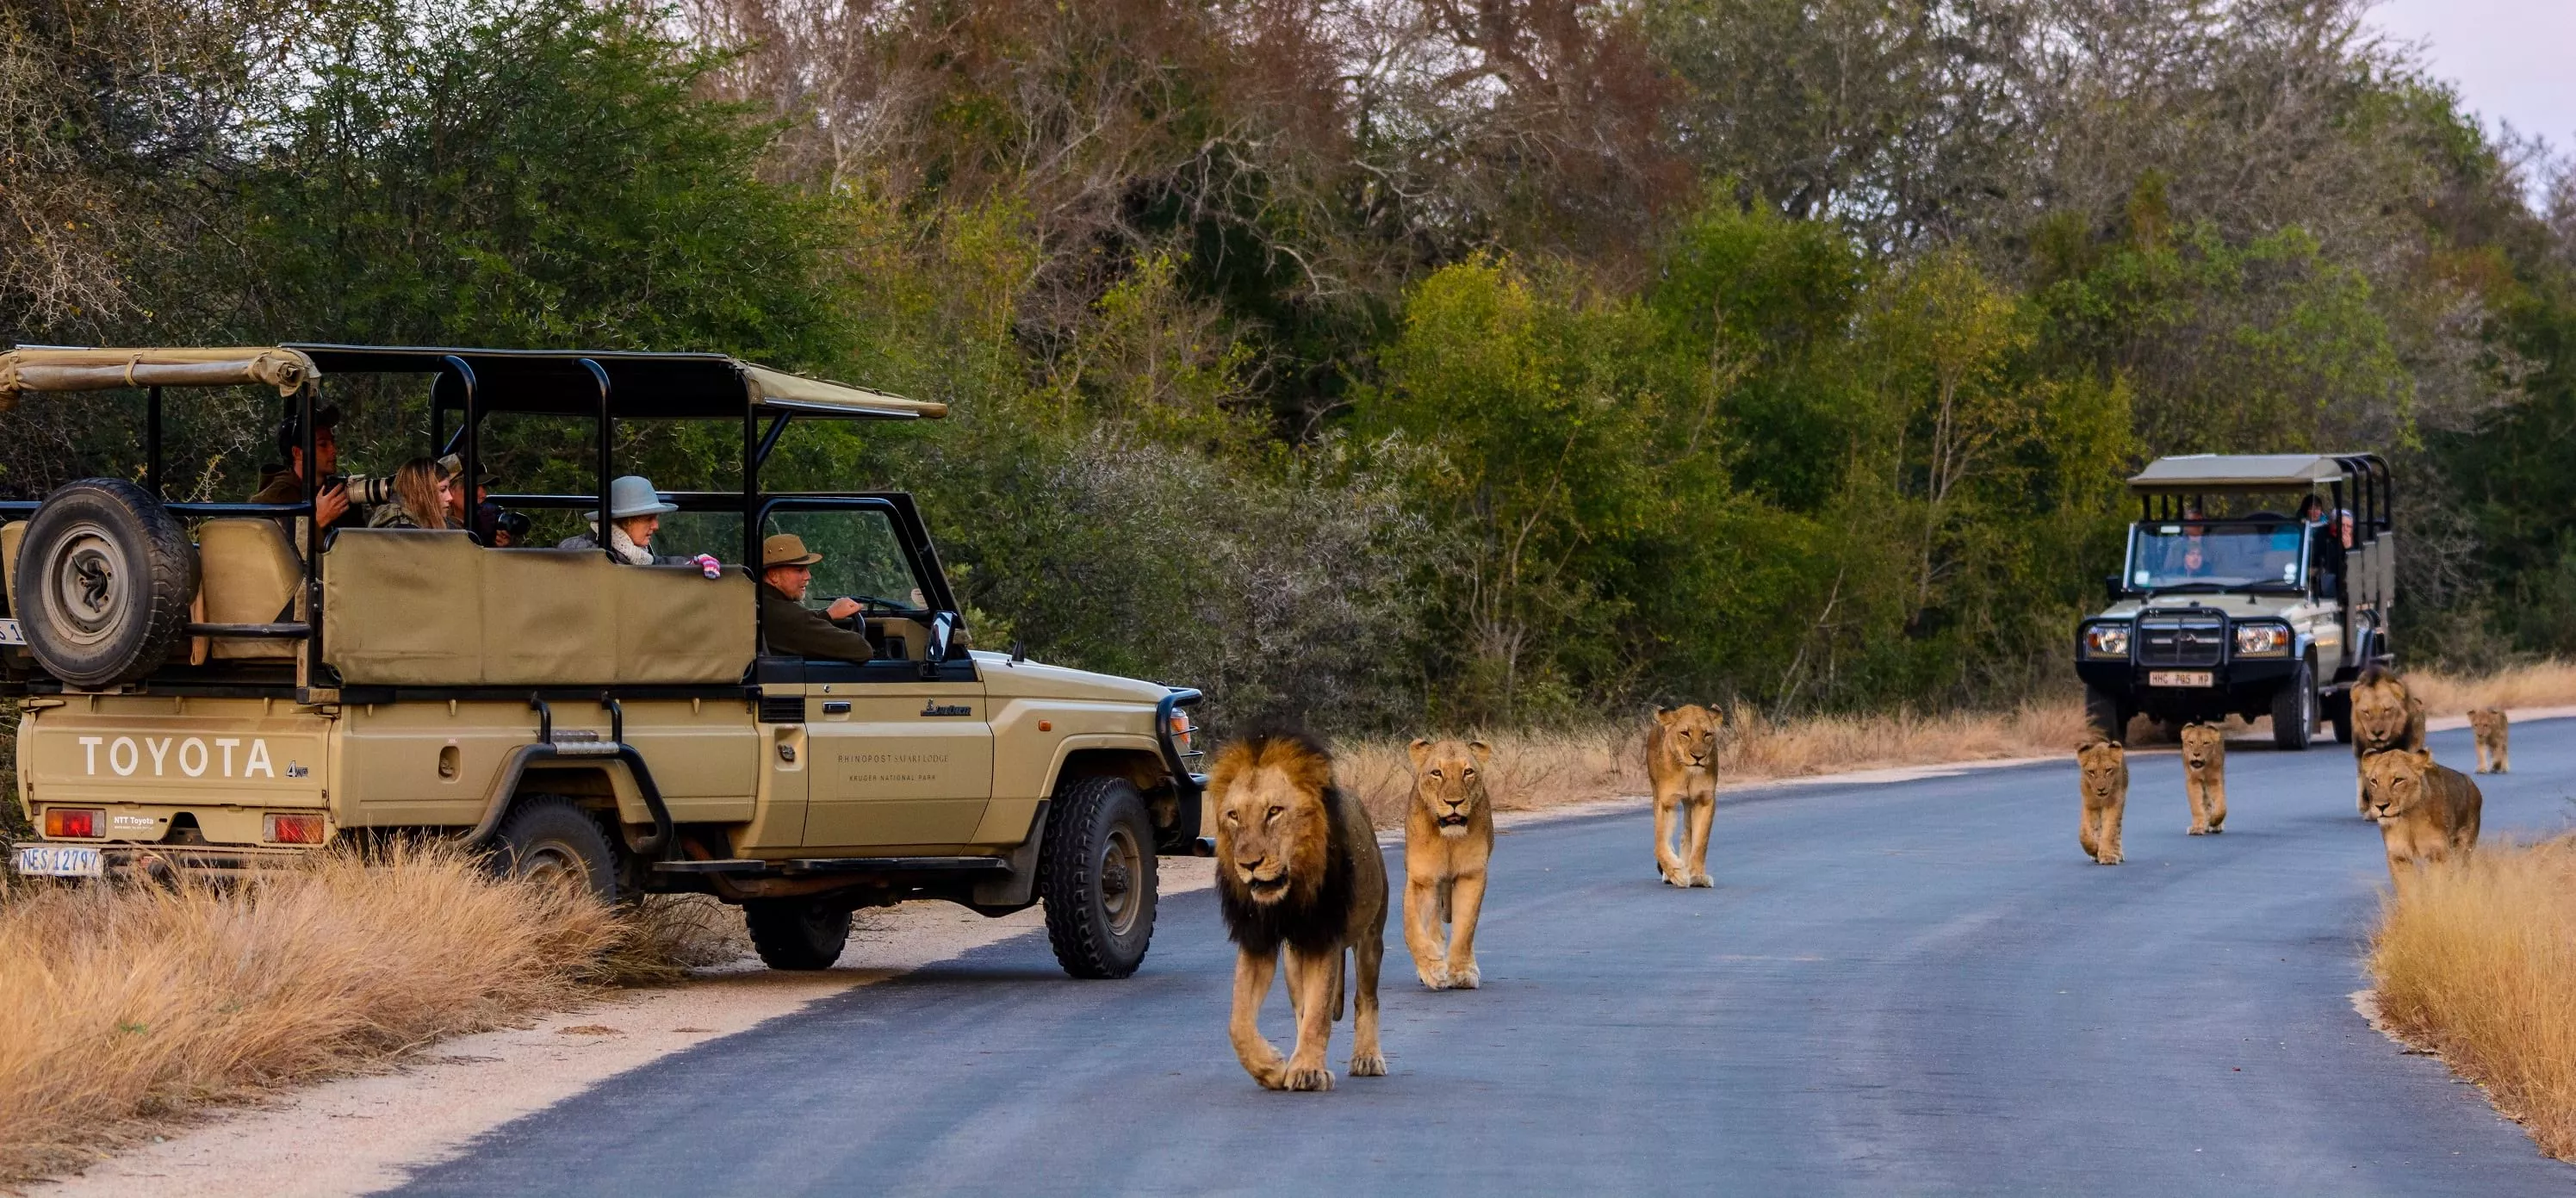 Afro Trek Safaris in Botswana, Africa | Safari - Rated 0.7